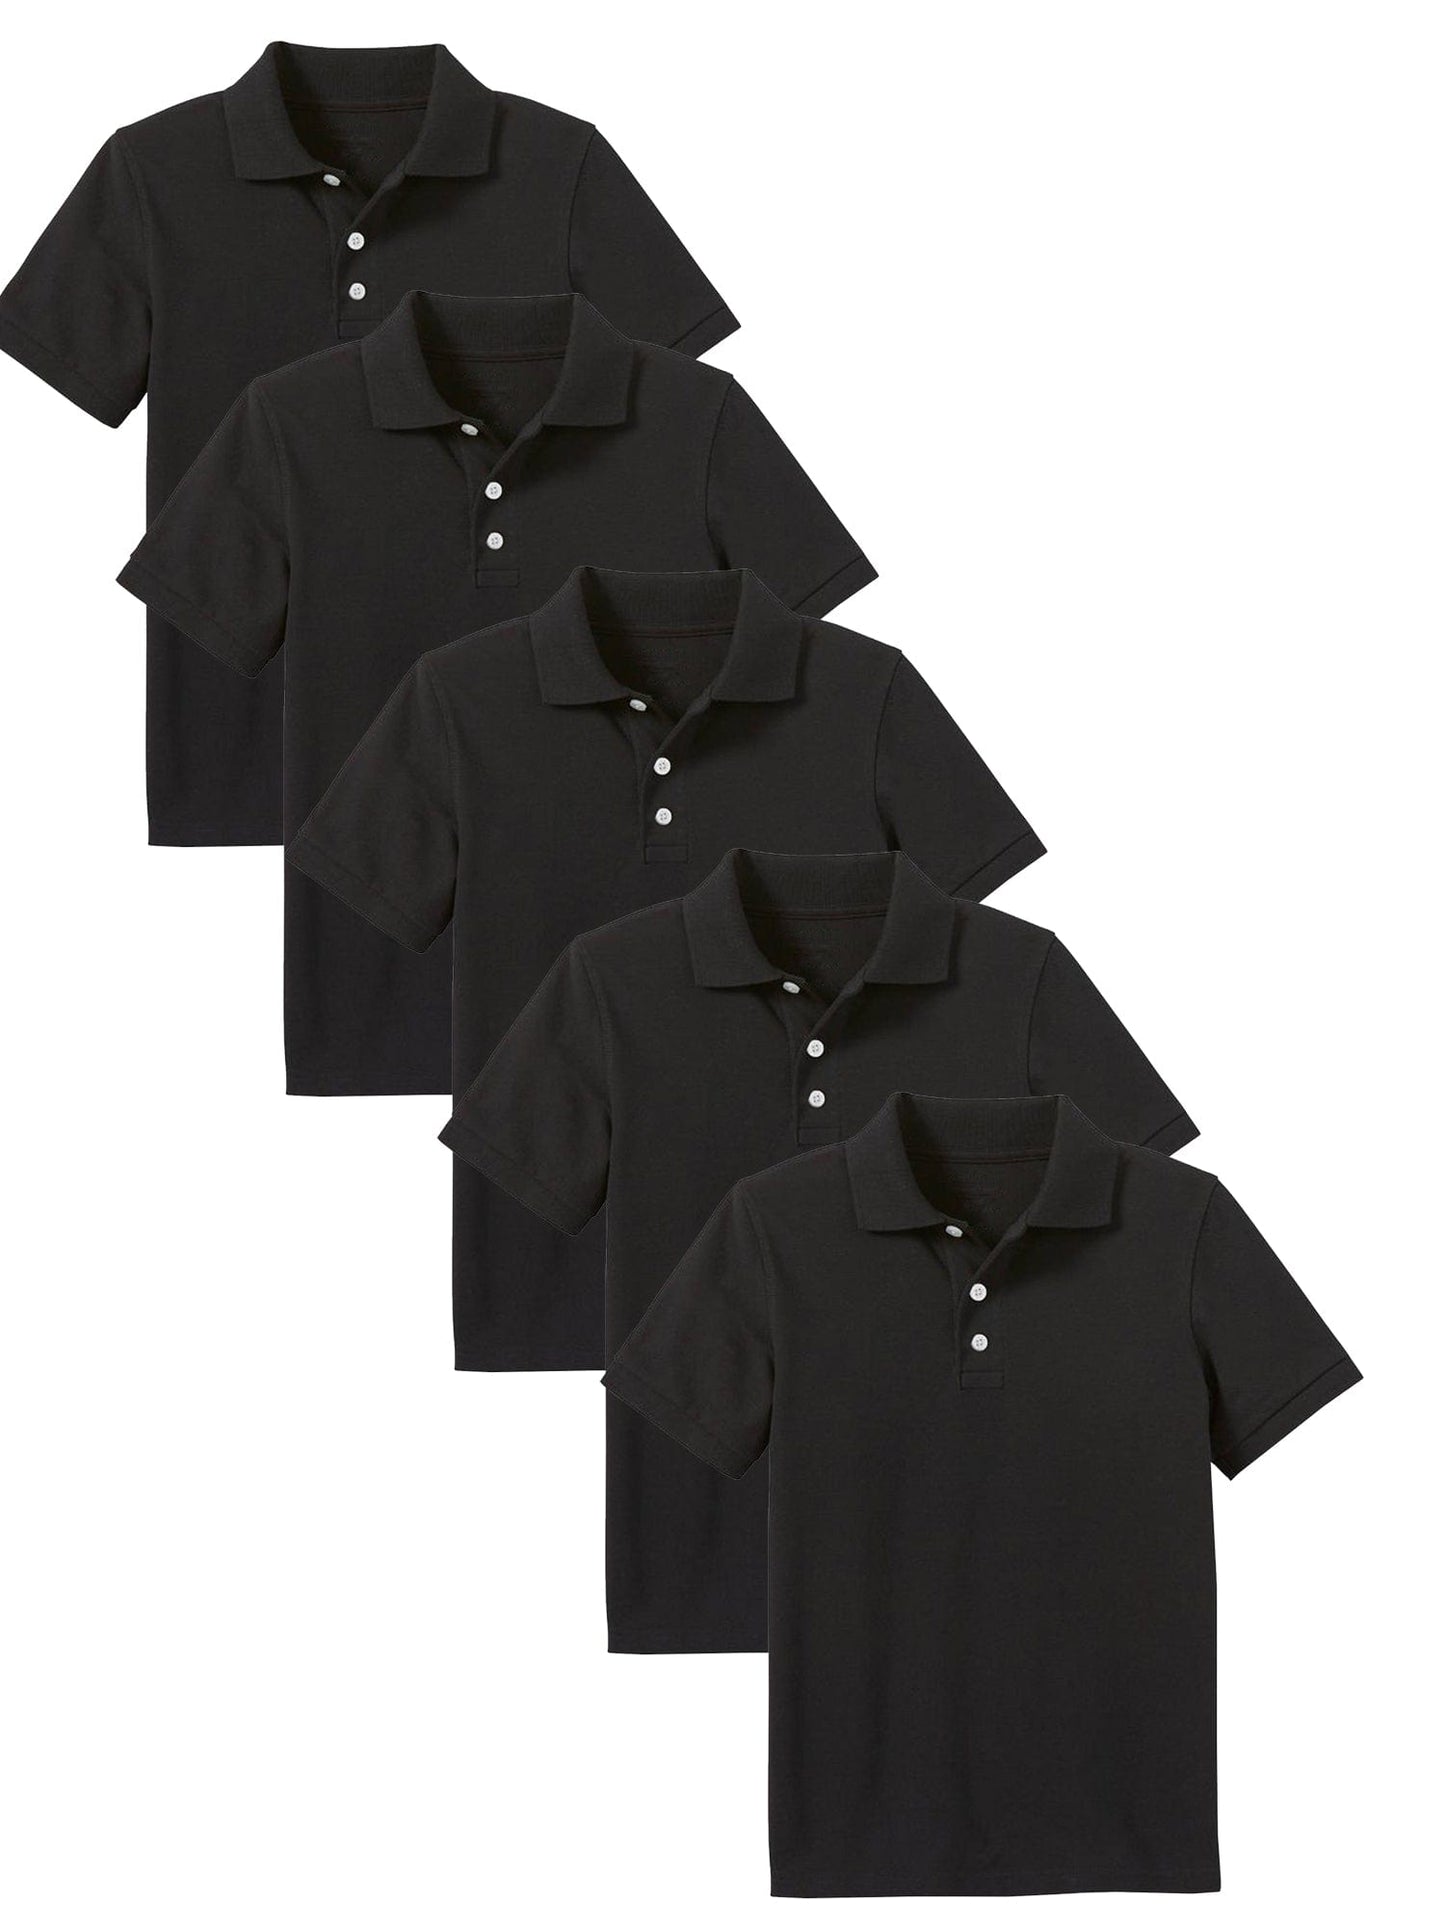 Paquete de 5 camisetas polo sin etiquetas de uniforme escolar para niños pequeños y grandes